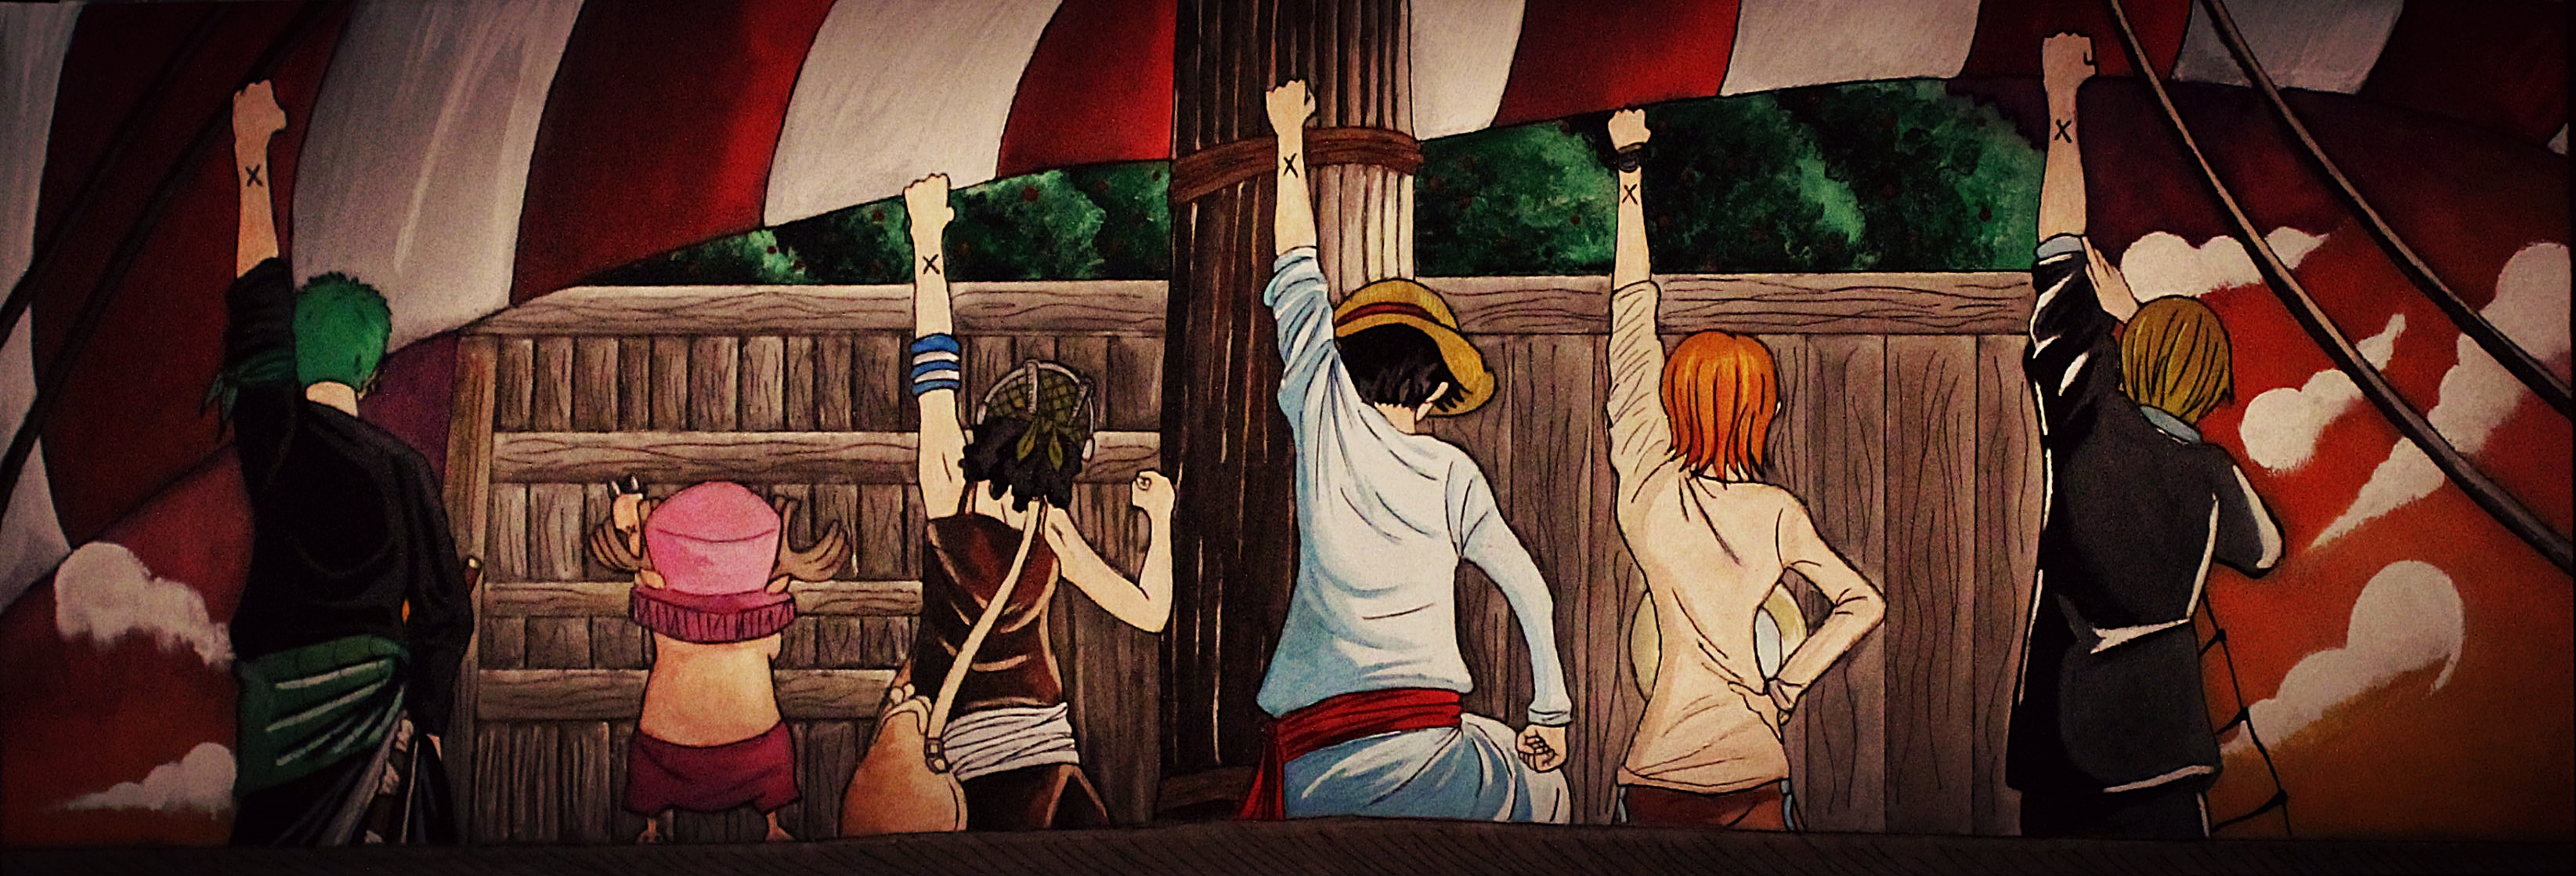 Download mobile wallpaper Anime, One Piece, Tony Tony Chopper, Usopp (One Piece), Roronoa Zoro, Monkey D Luffy, Nami (One Piece), Sanji (One Piece) for free.